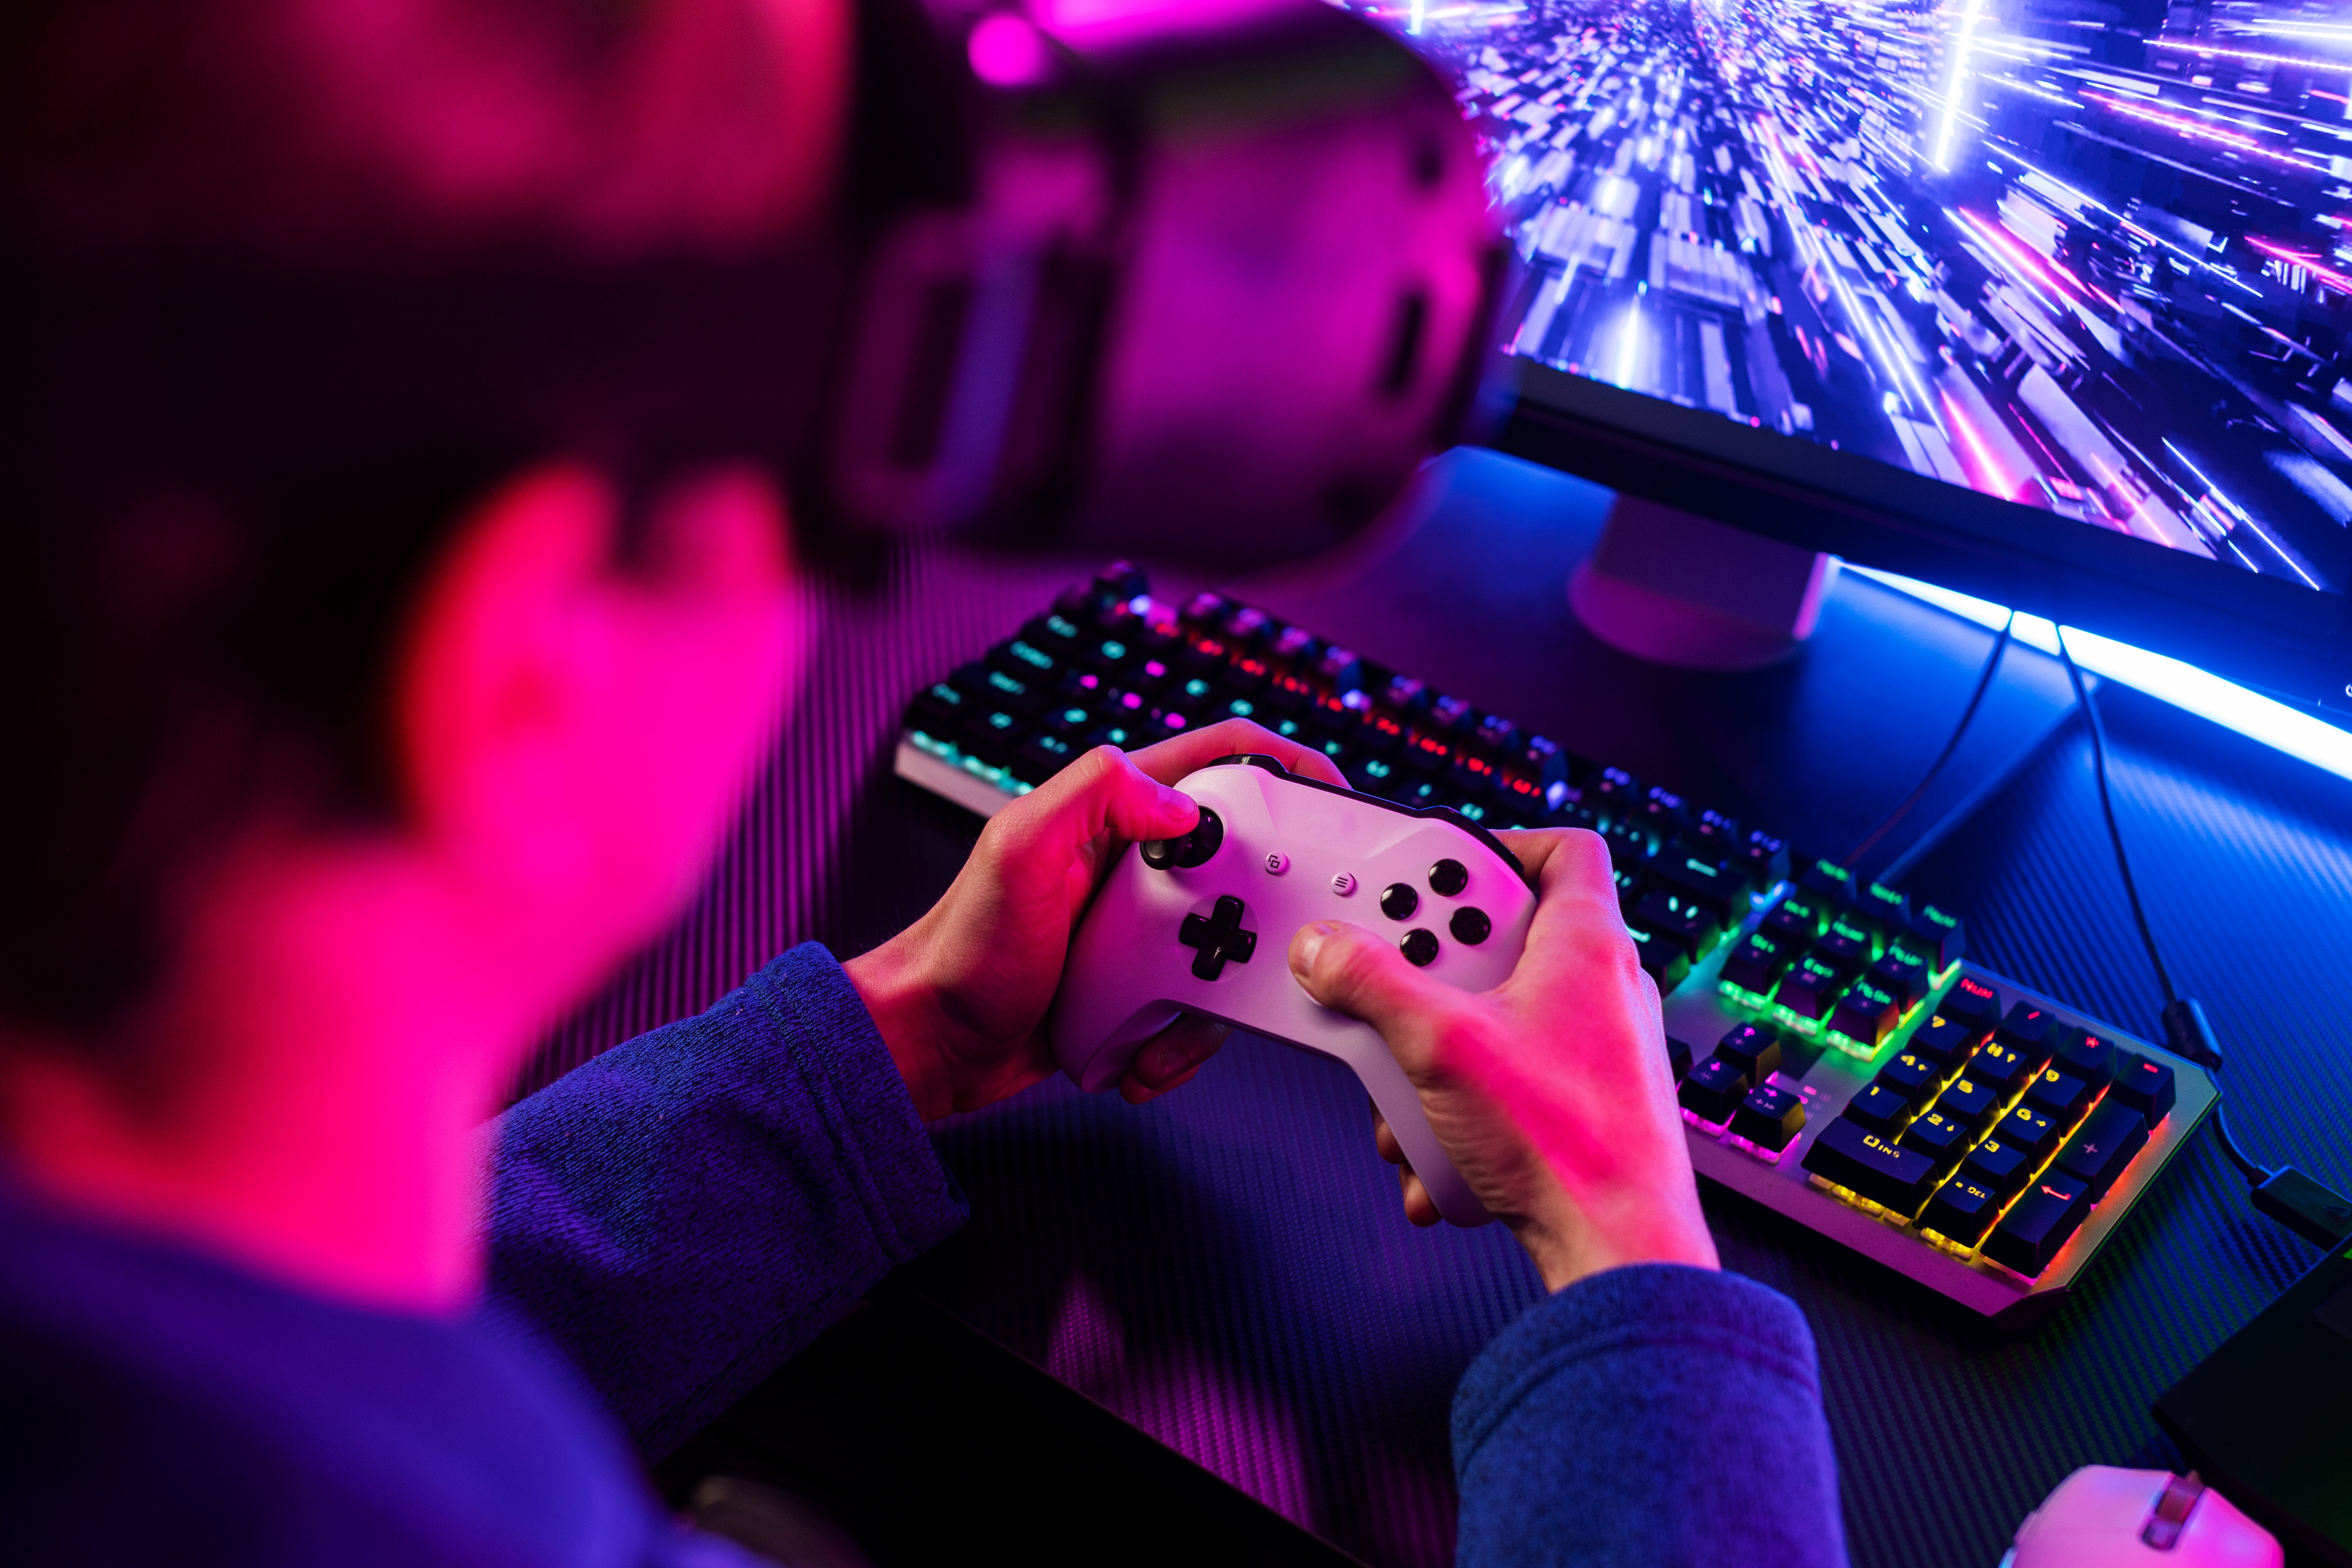 Imagem contendo um rapaz segurando um controle de videogame branco e usando um óculos de realidade virtual, enquanto joga.